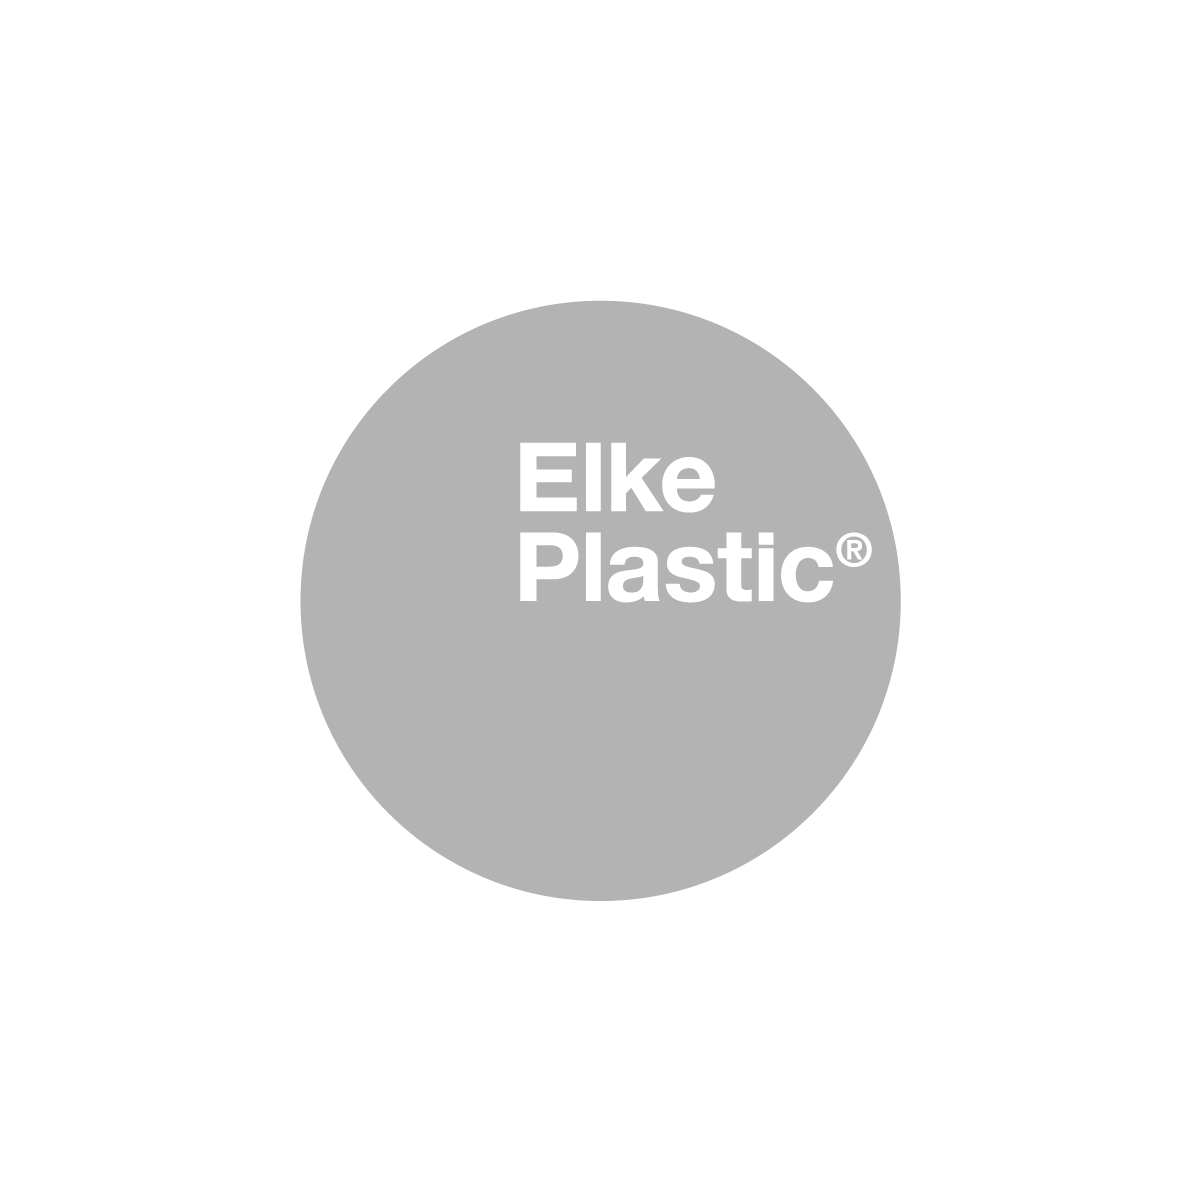 Elke Plastic